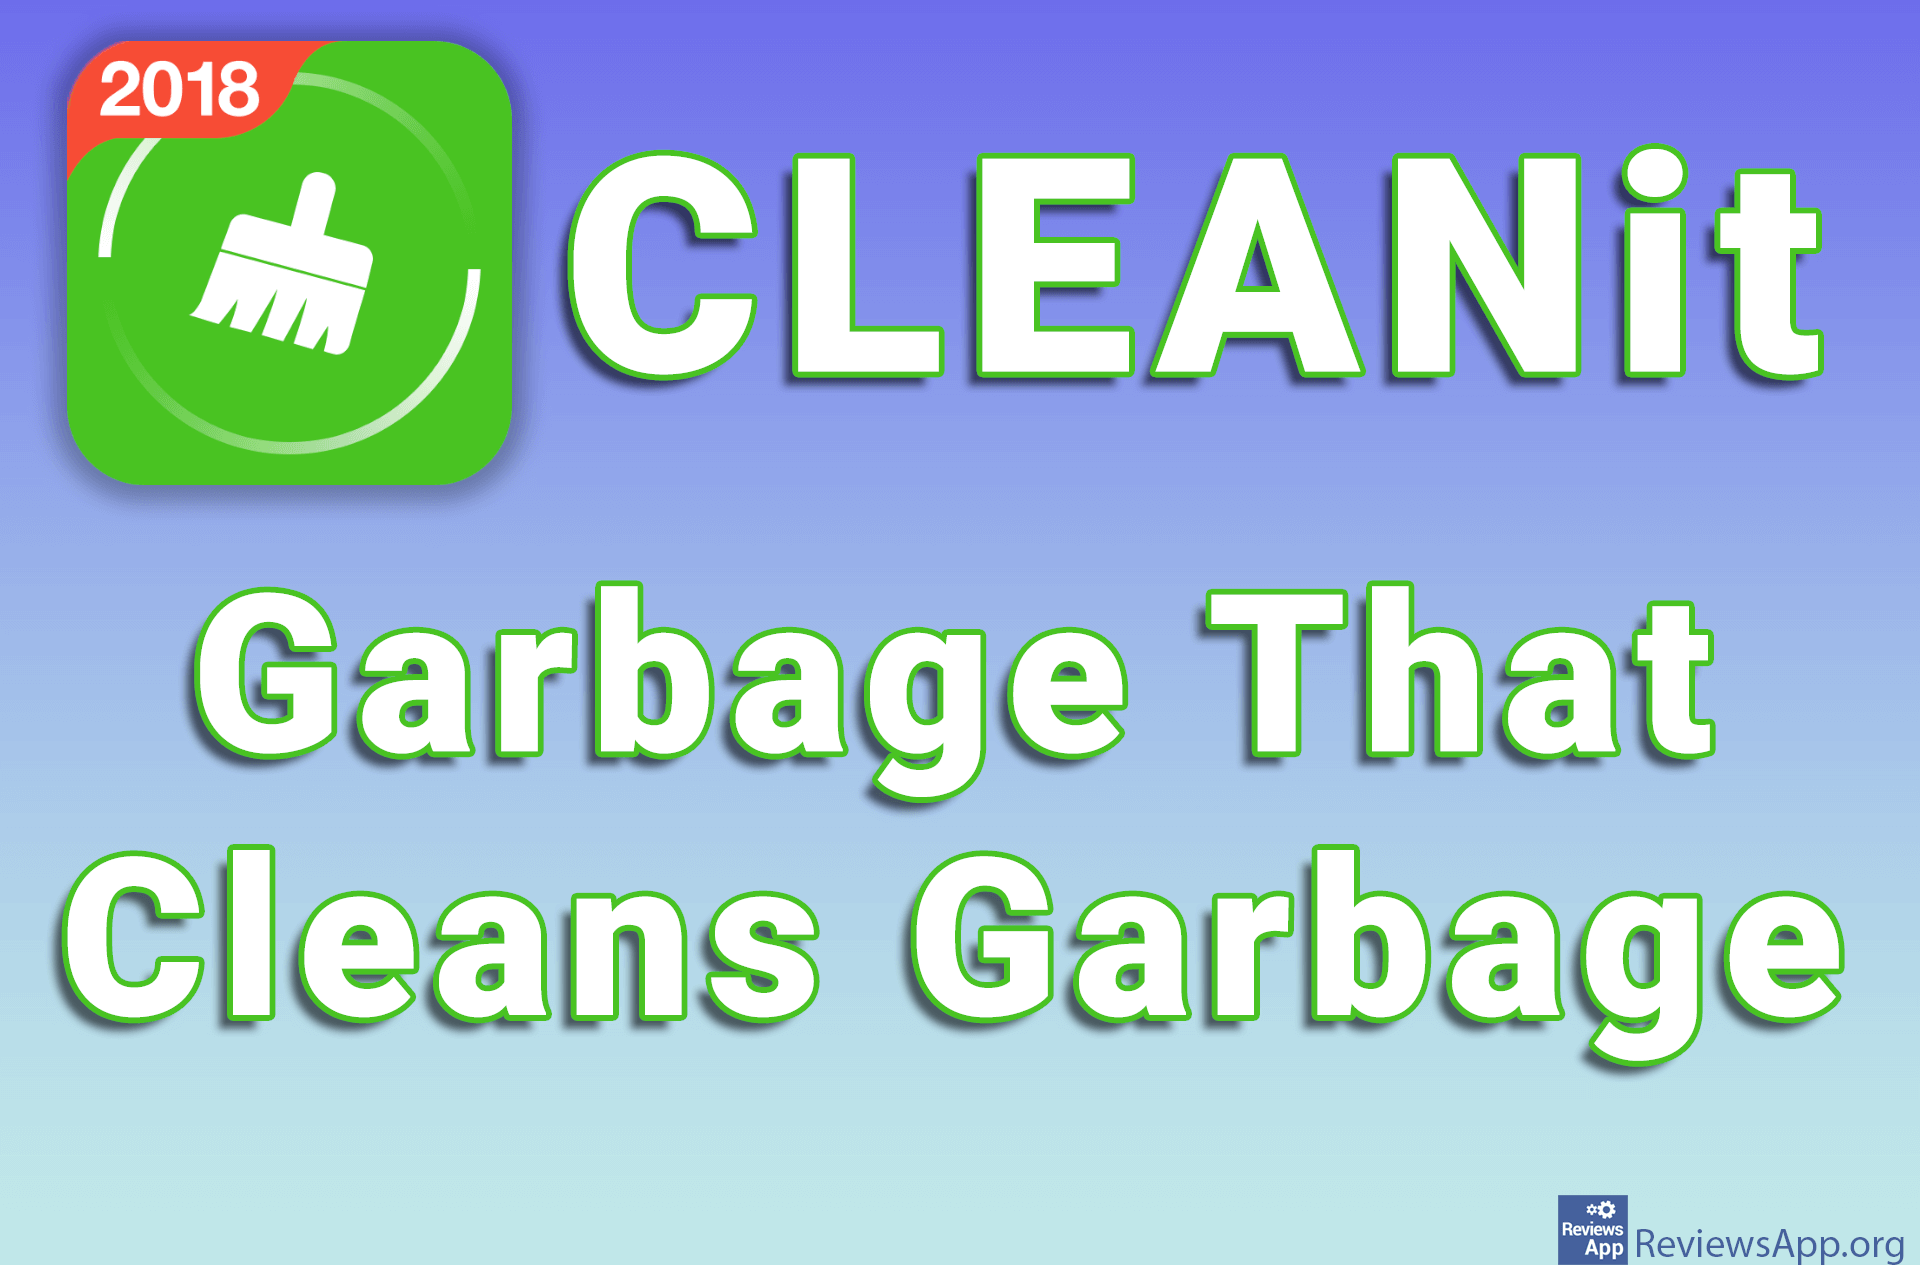 CLEANit – Garbage That Cleans Garbage